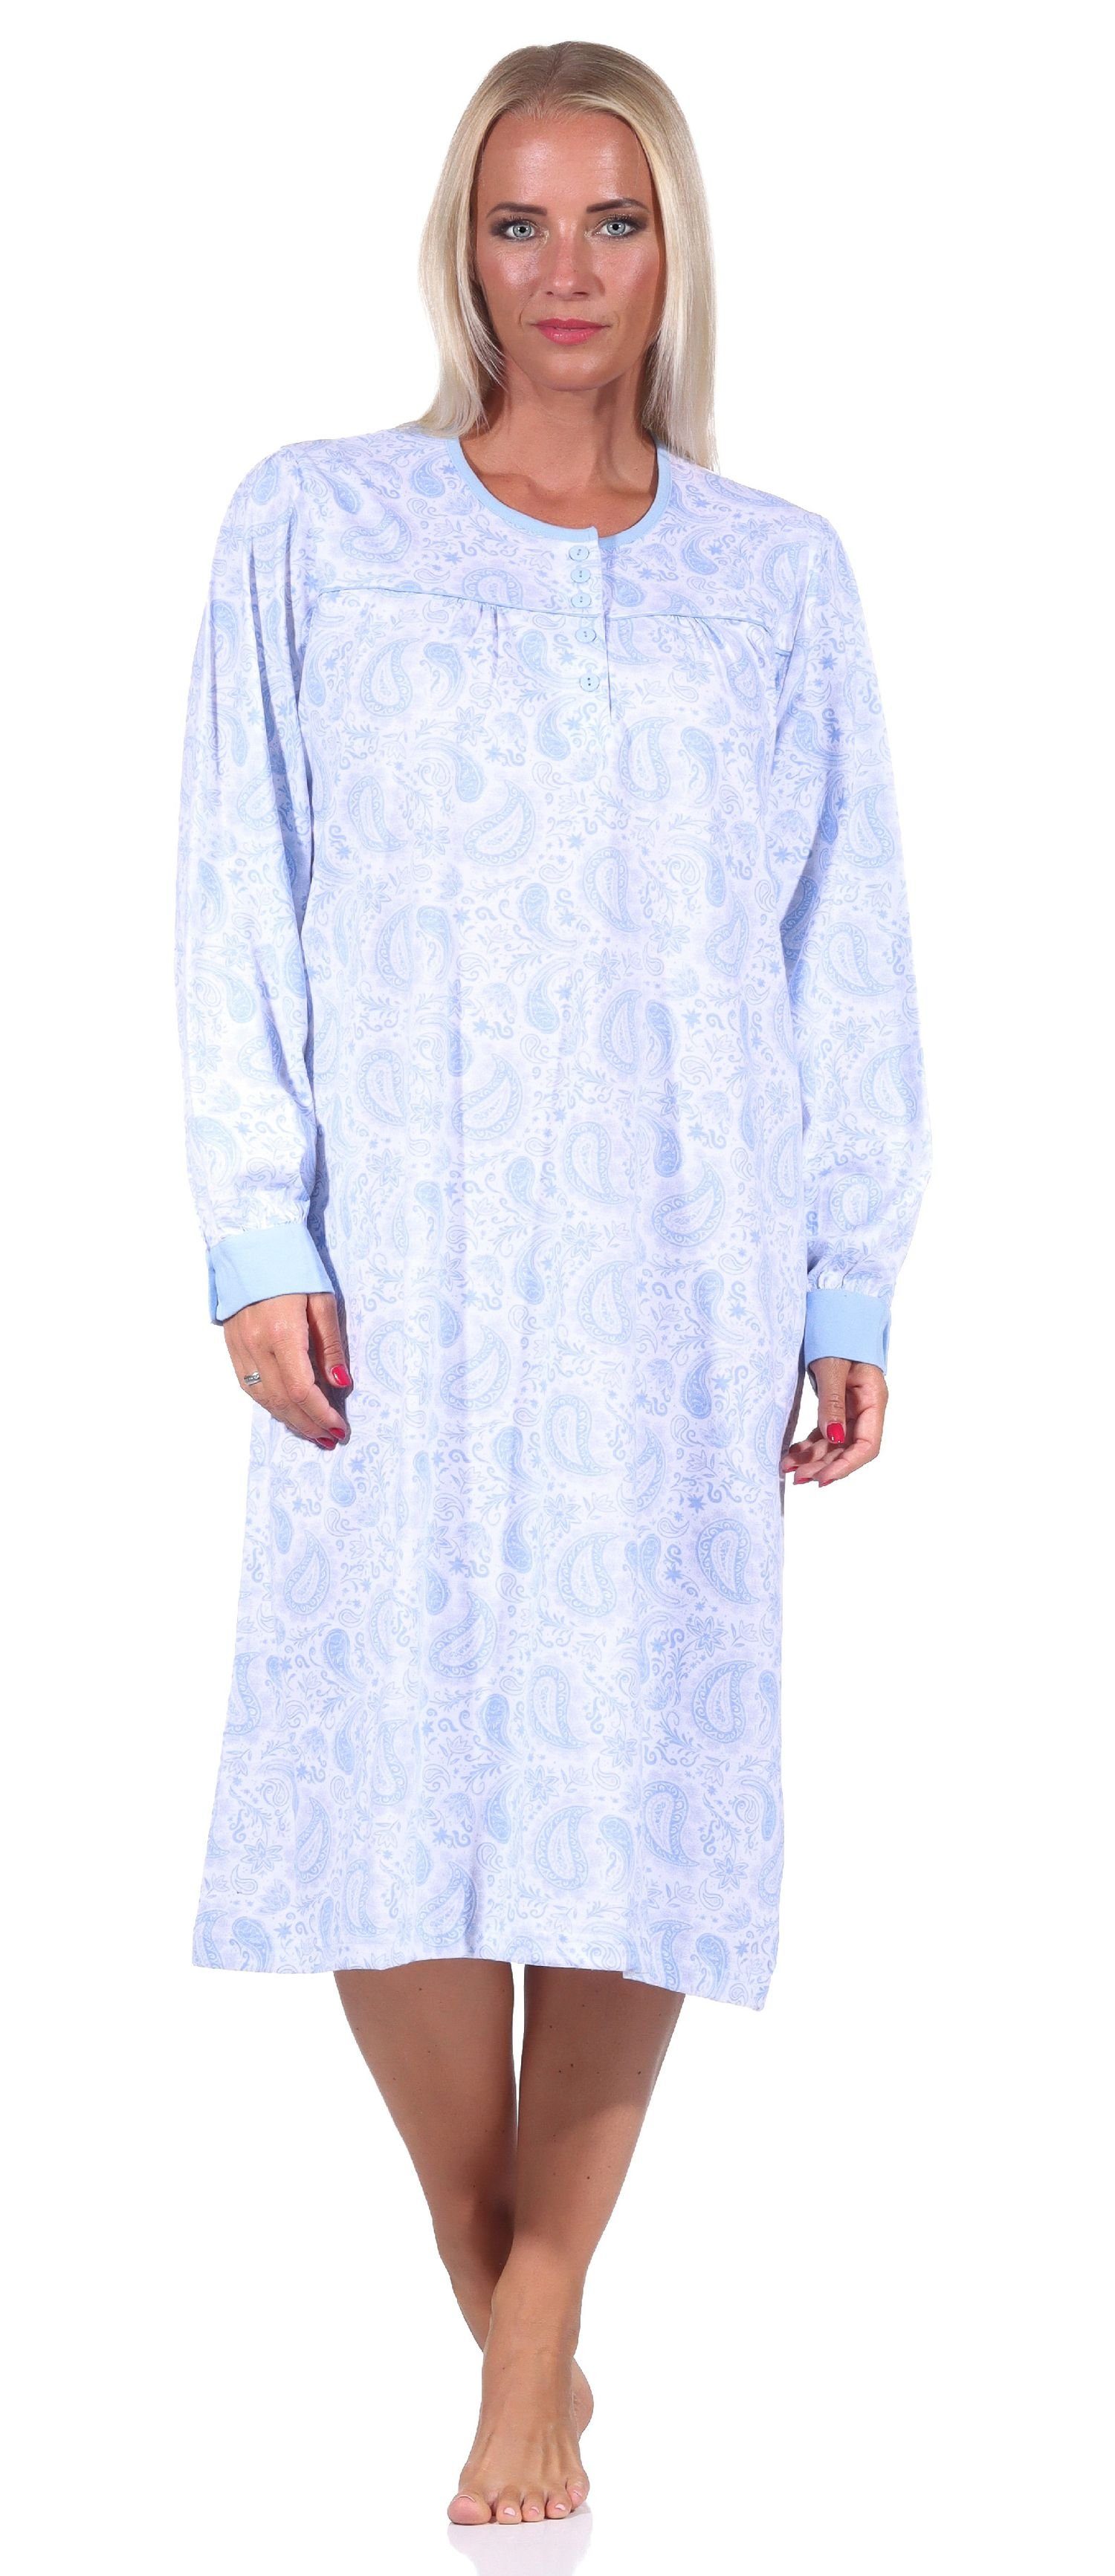 Normann Nachthemd Frauliches Damen Nachthemd mit Paisley Muster, Knopfleiste am Hals hellblau